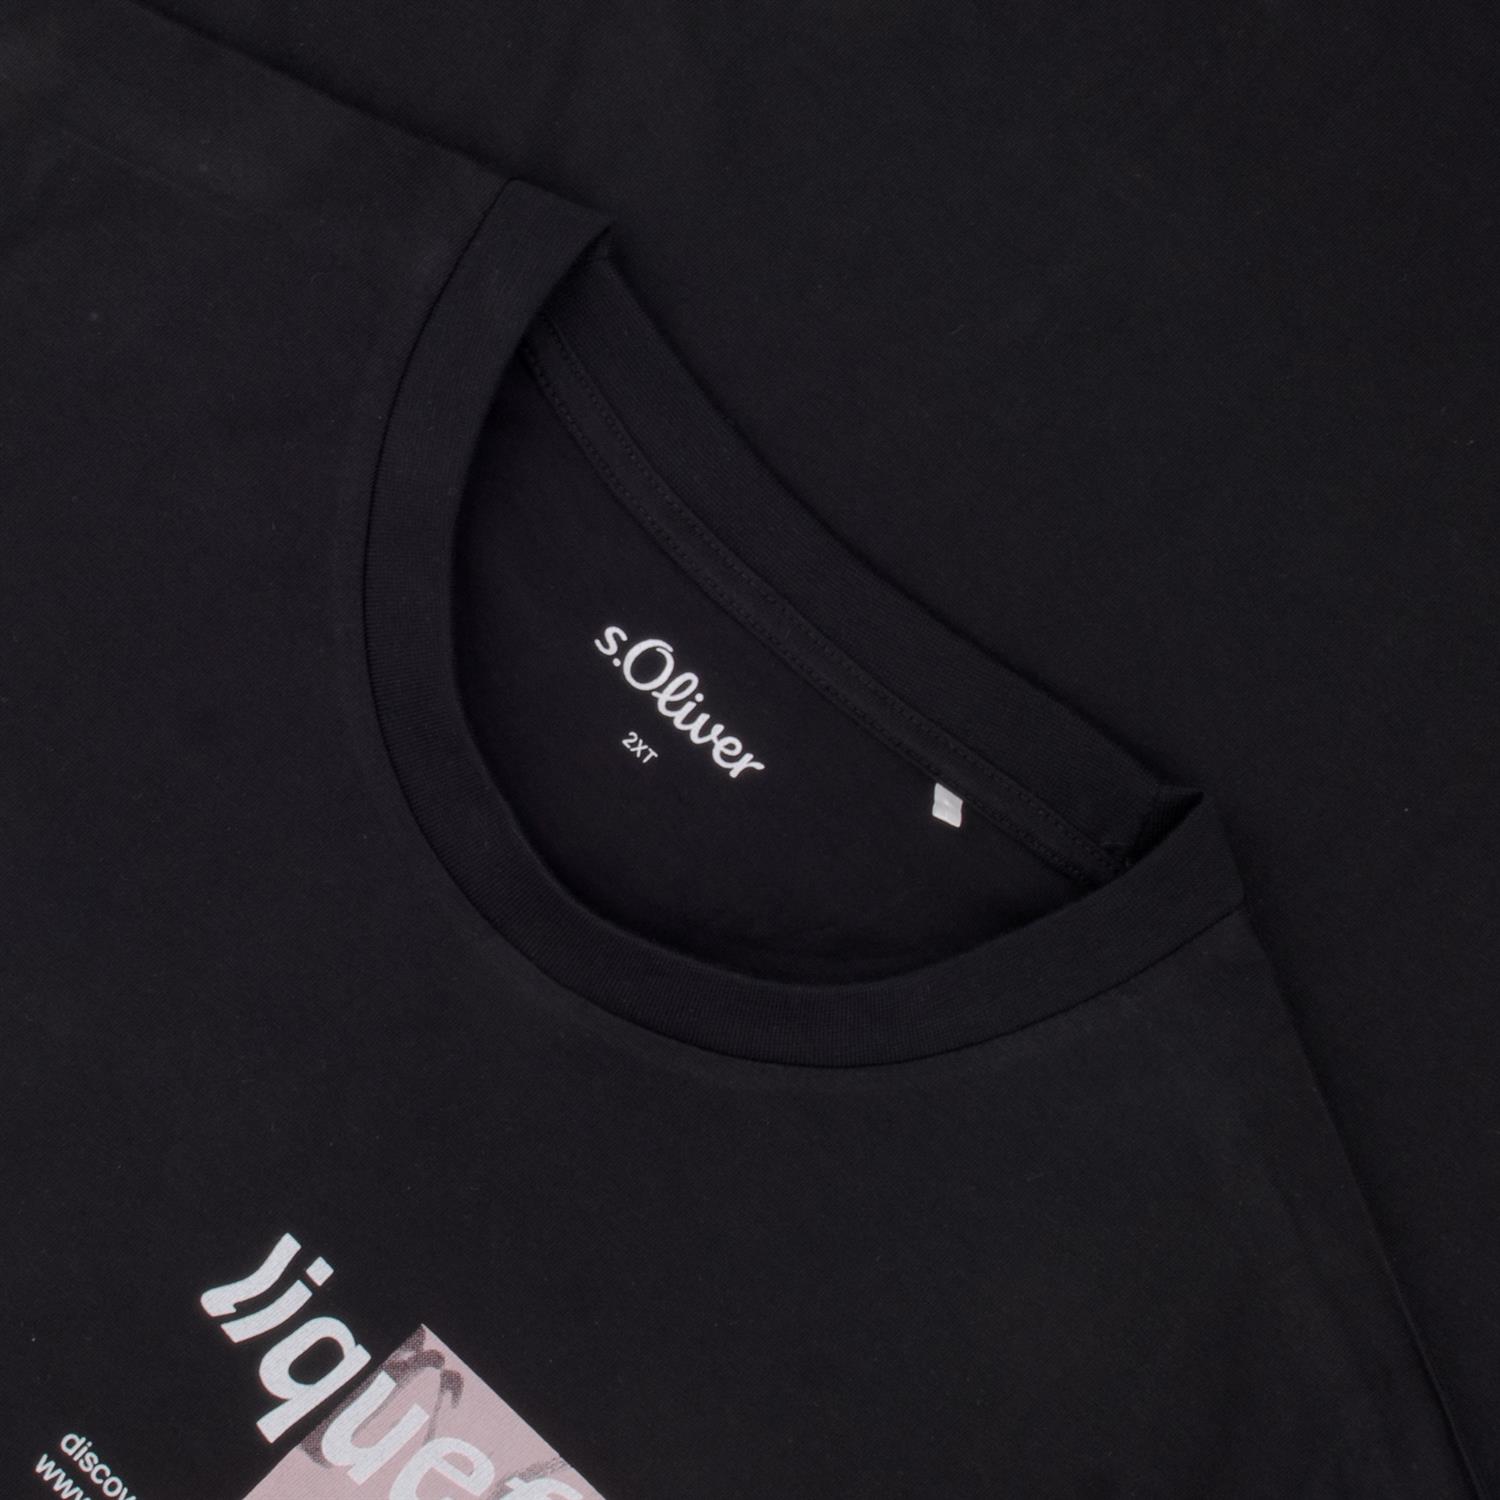 S.OLIVER T-Shirt - EXTRA lang schwarz Herrenmode in Übergrößen kaufen